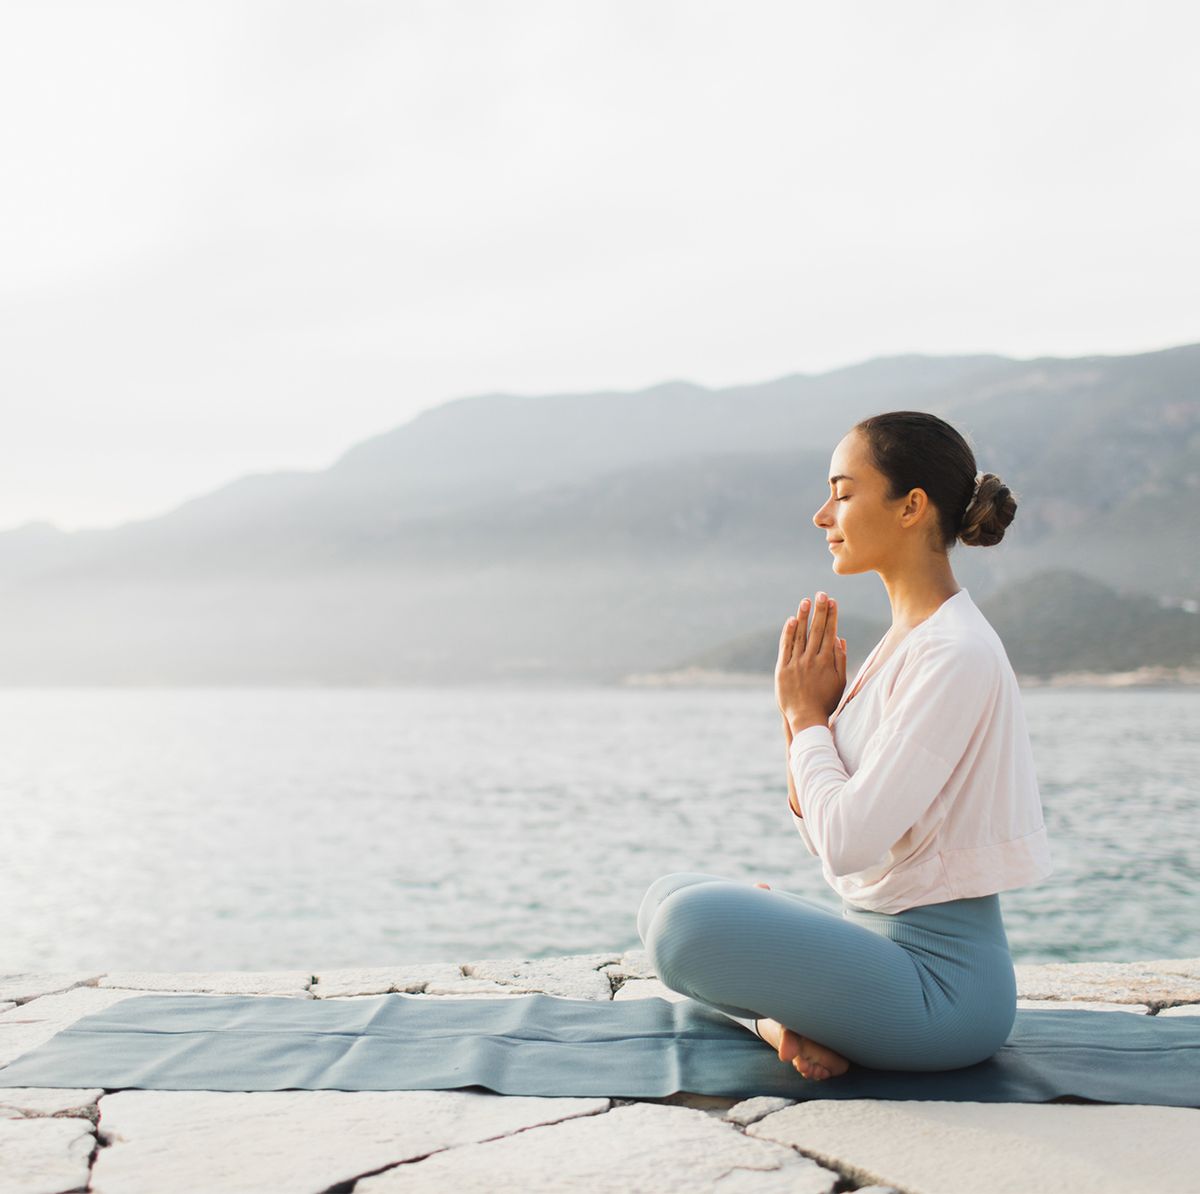 Beneficios del yoga y la meditación